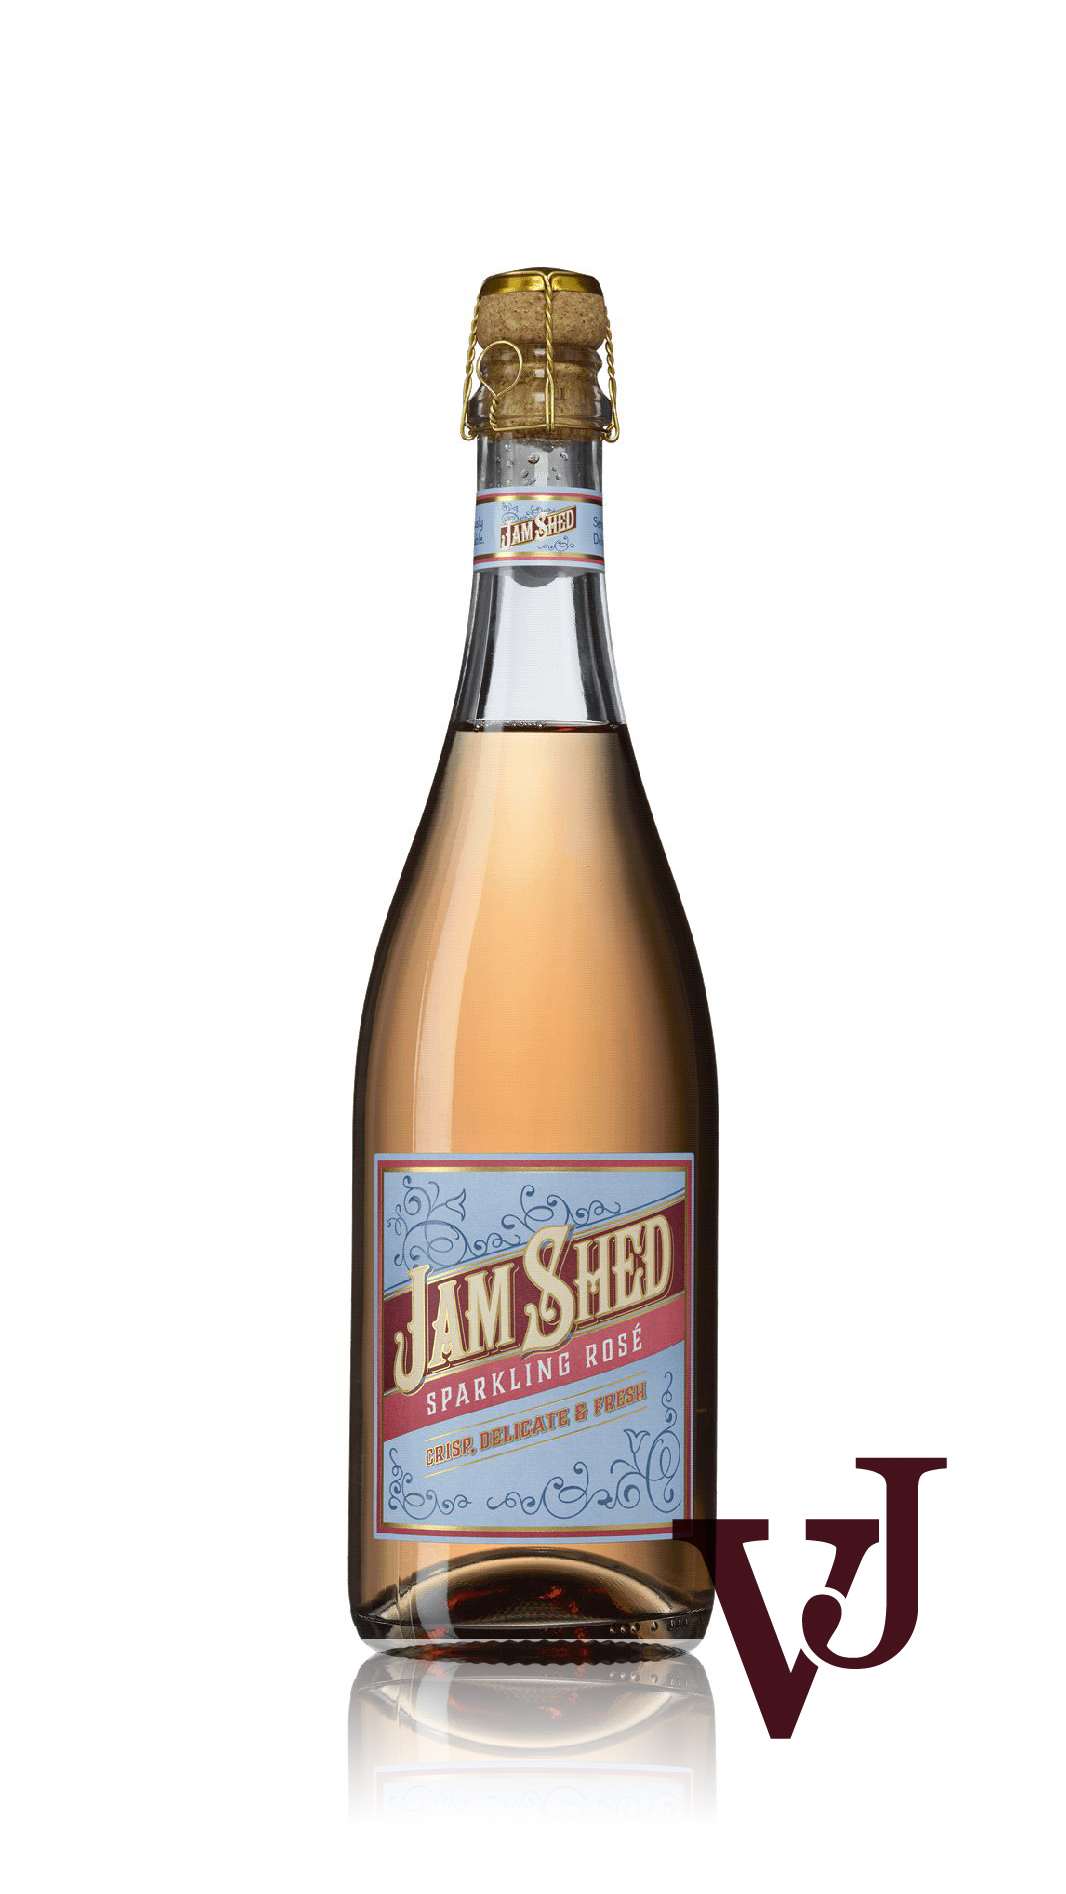 Rosé Vin - Jam Shed Sparkling Rosé artikel nummer 7348301 från producenten Accolade Wines från Australien